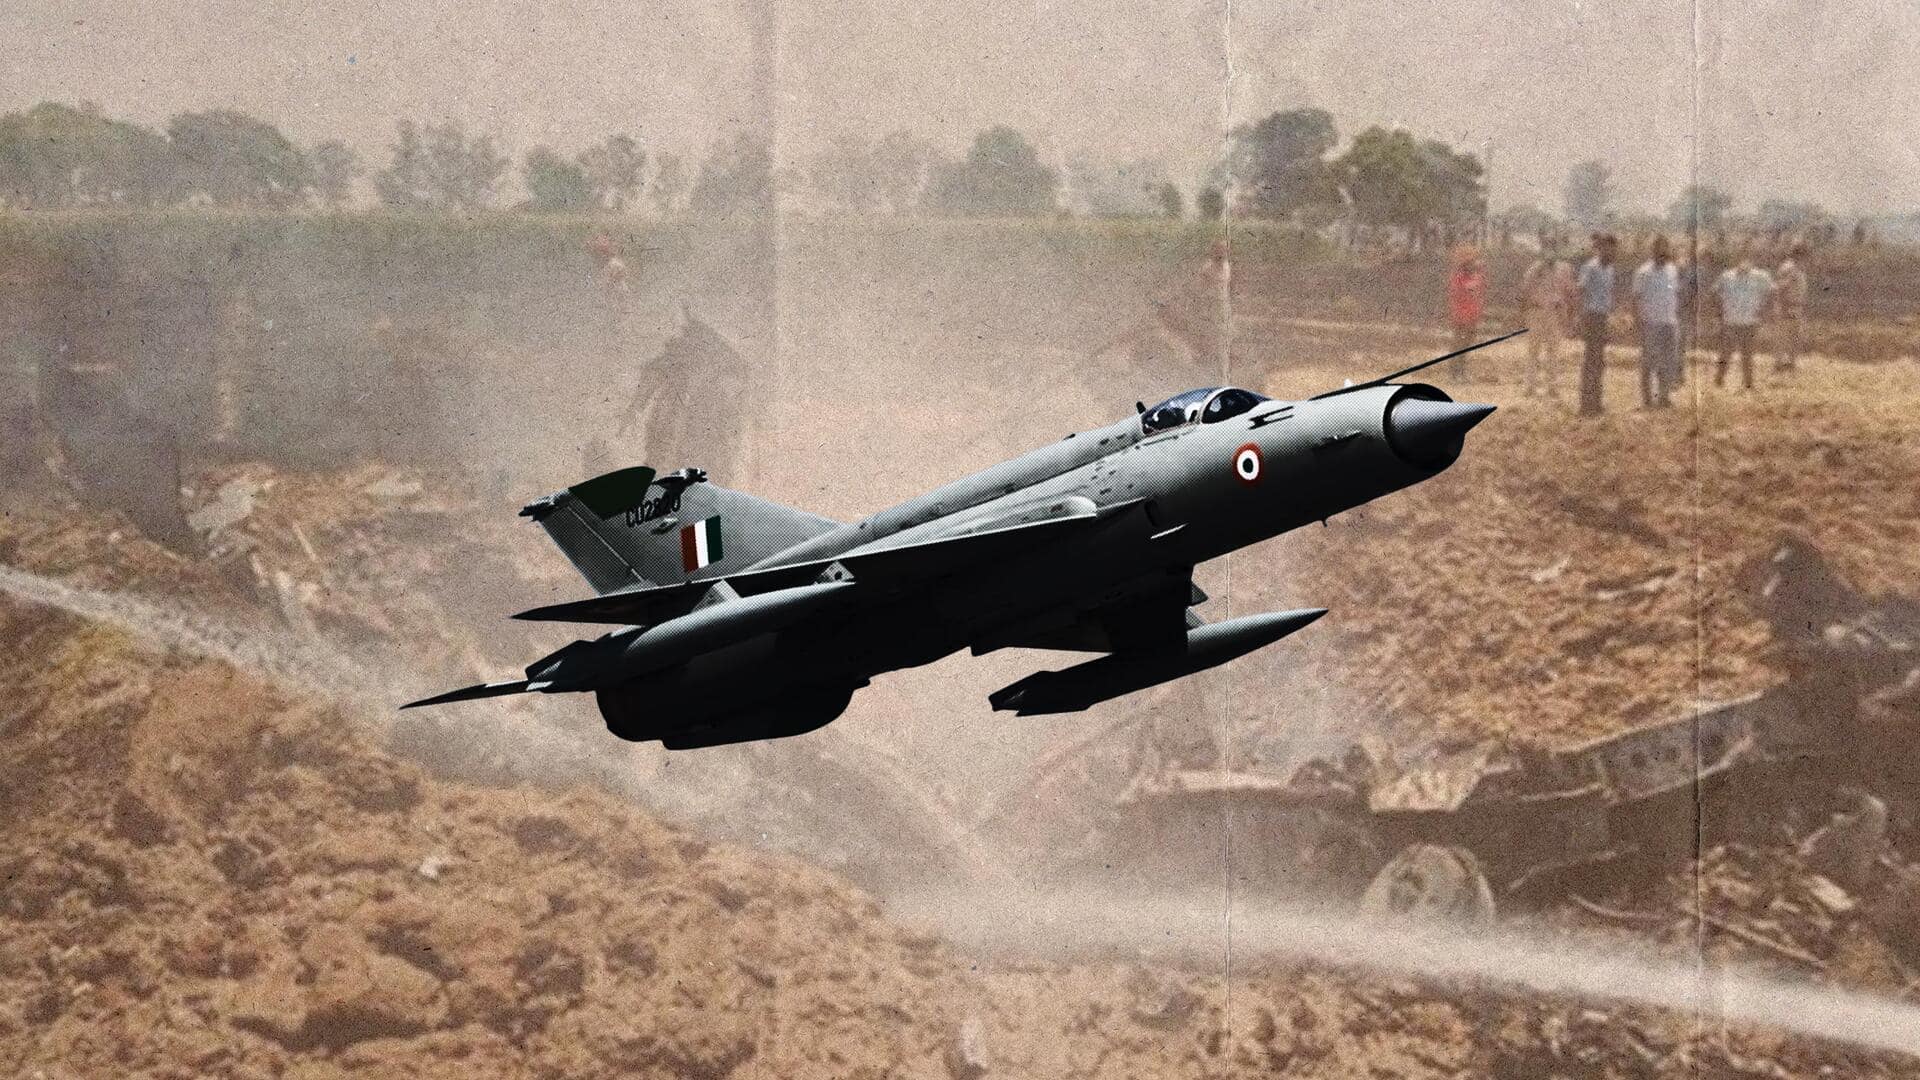 राजस्थान में वायुसेना का मिग-21 विमान क्रैश होकर घर पर गिरा, 3 की मौत